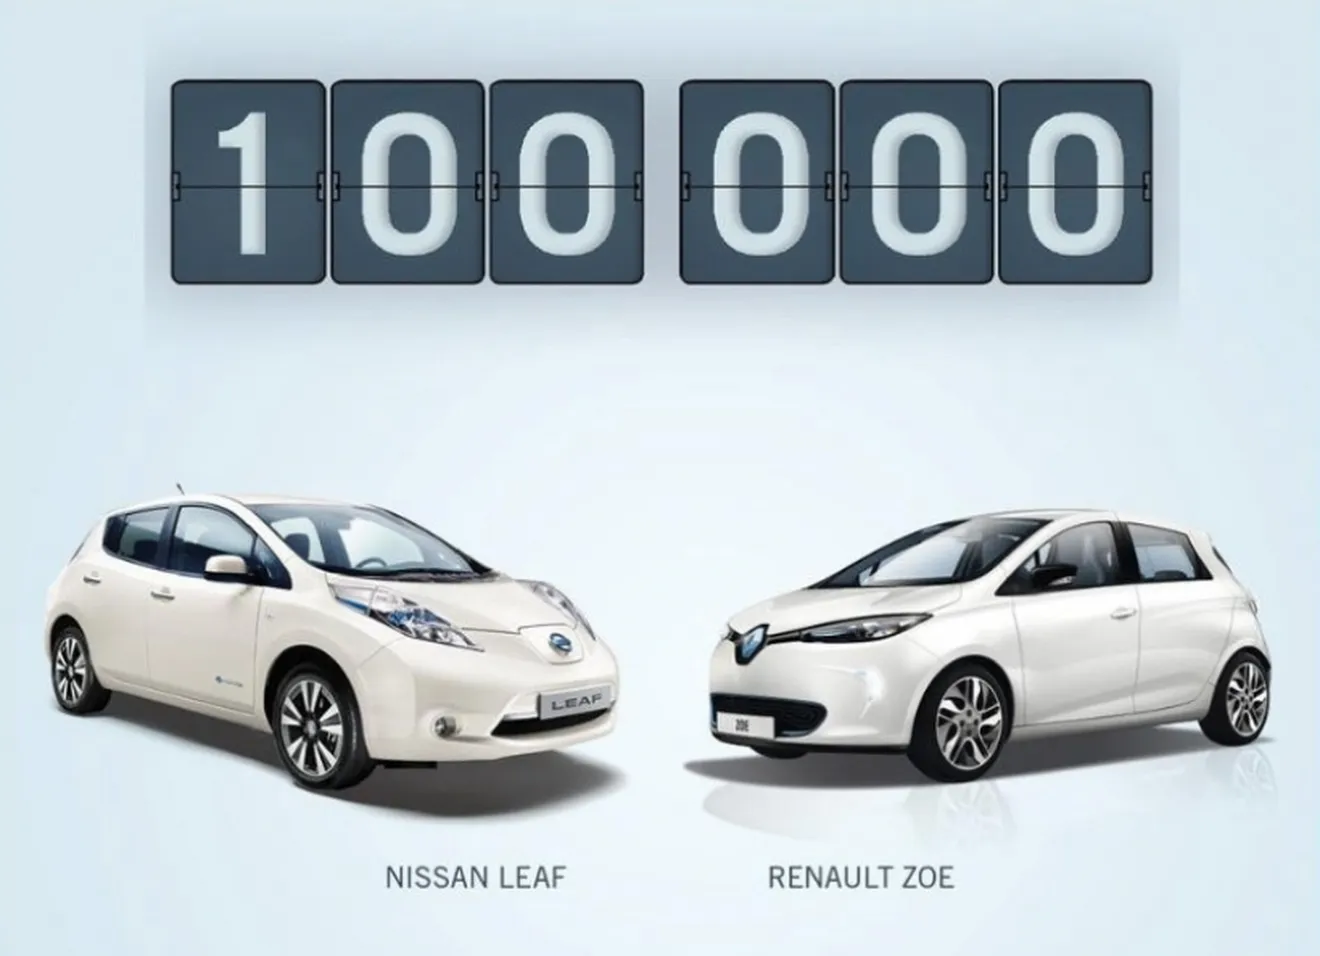 100.000 vehículos eléctricos fabricados por Renault-Nissan